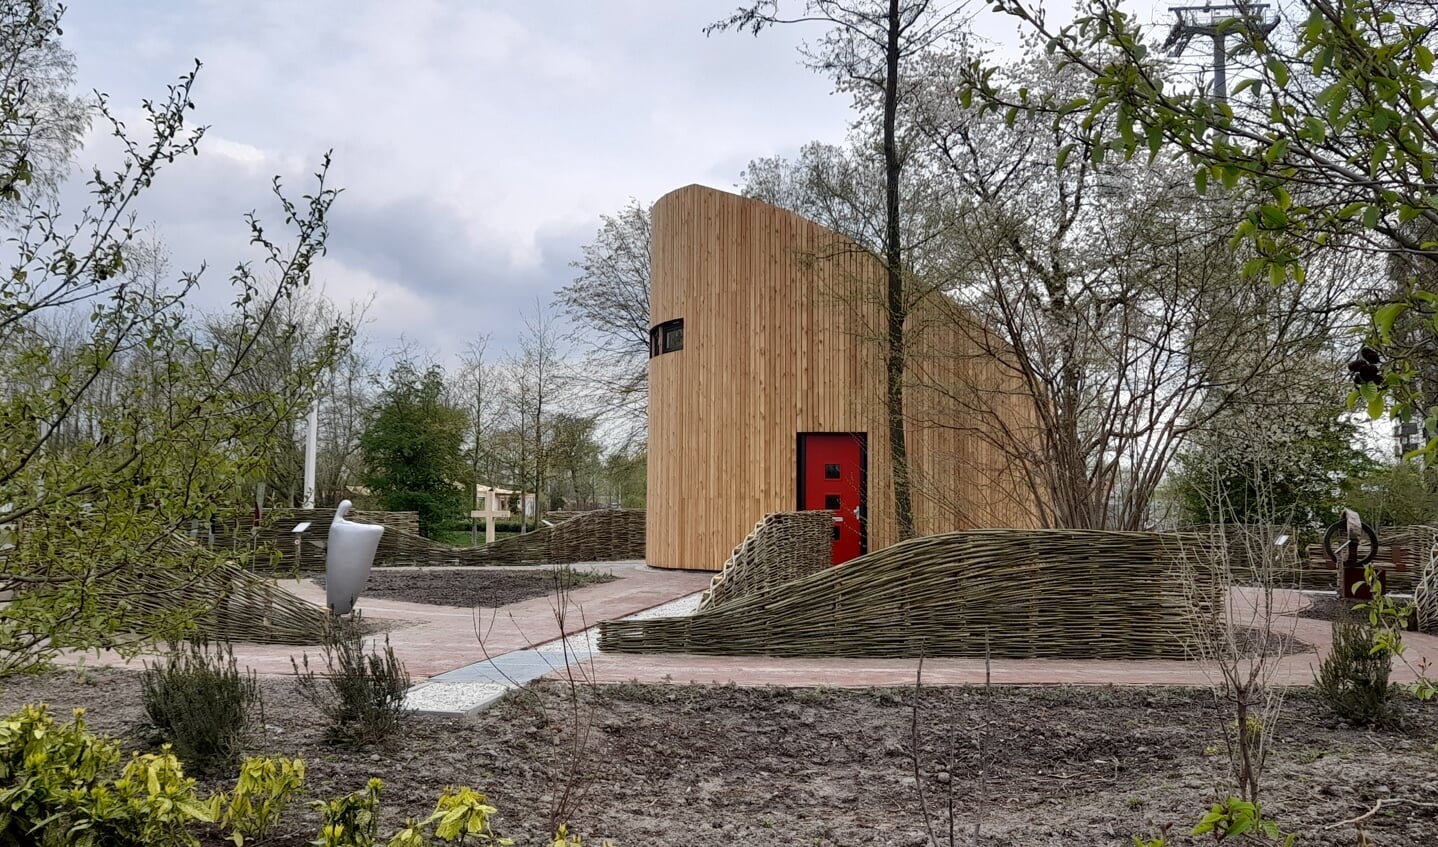 De Tiny Church, vergelijkbaar met die in Almere Poort, heeft ook een plek op de Floriade. (Foto: Almere DEZE WEEK)